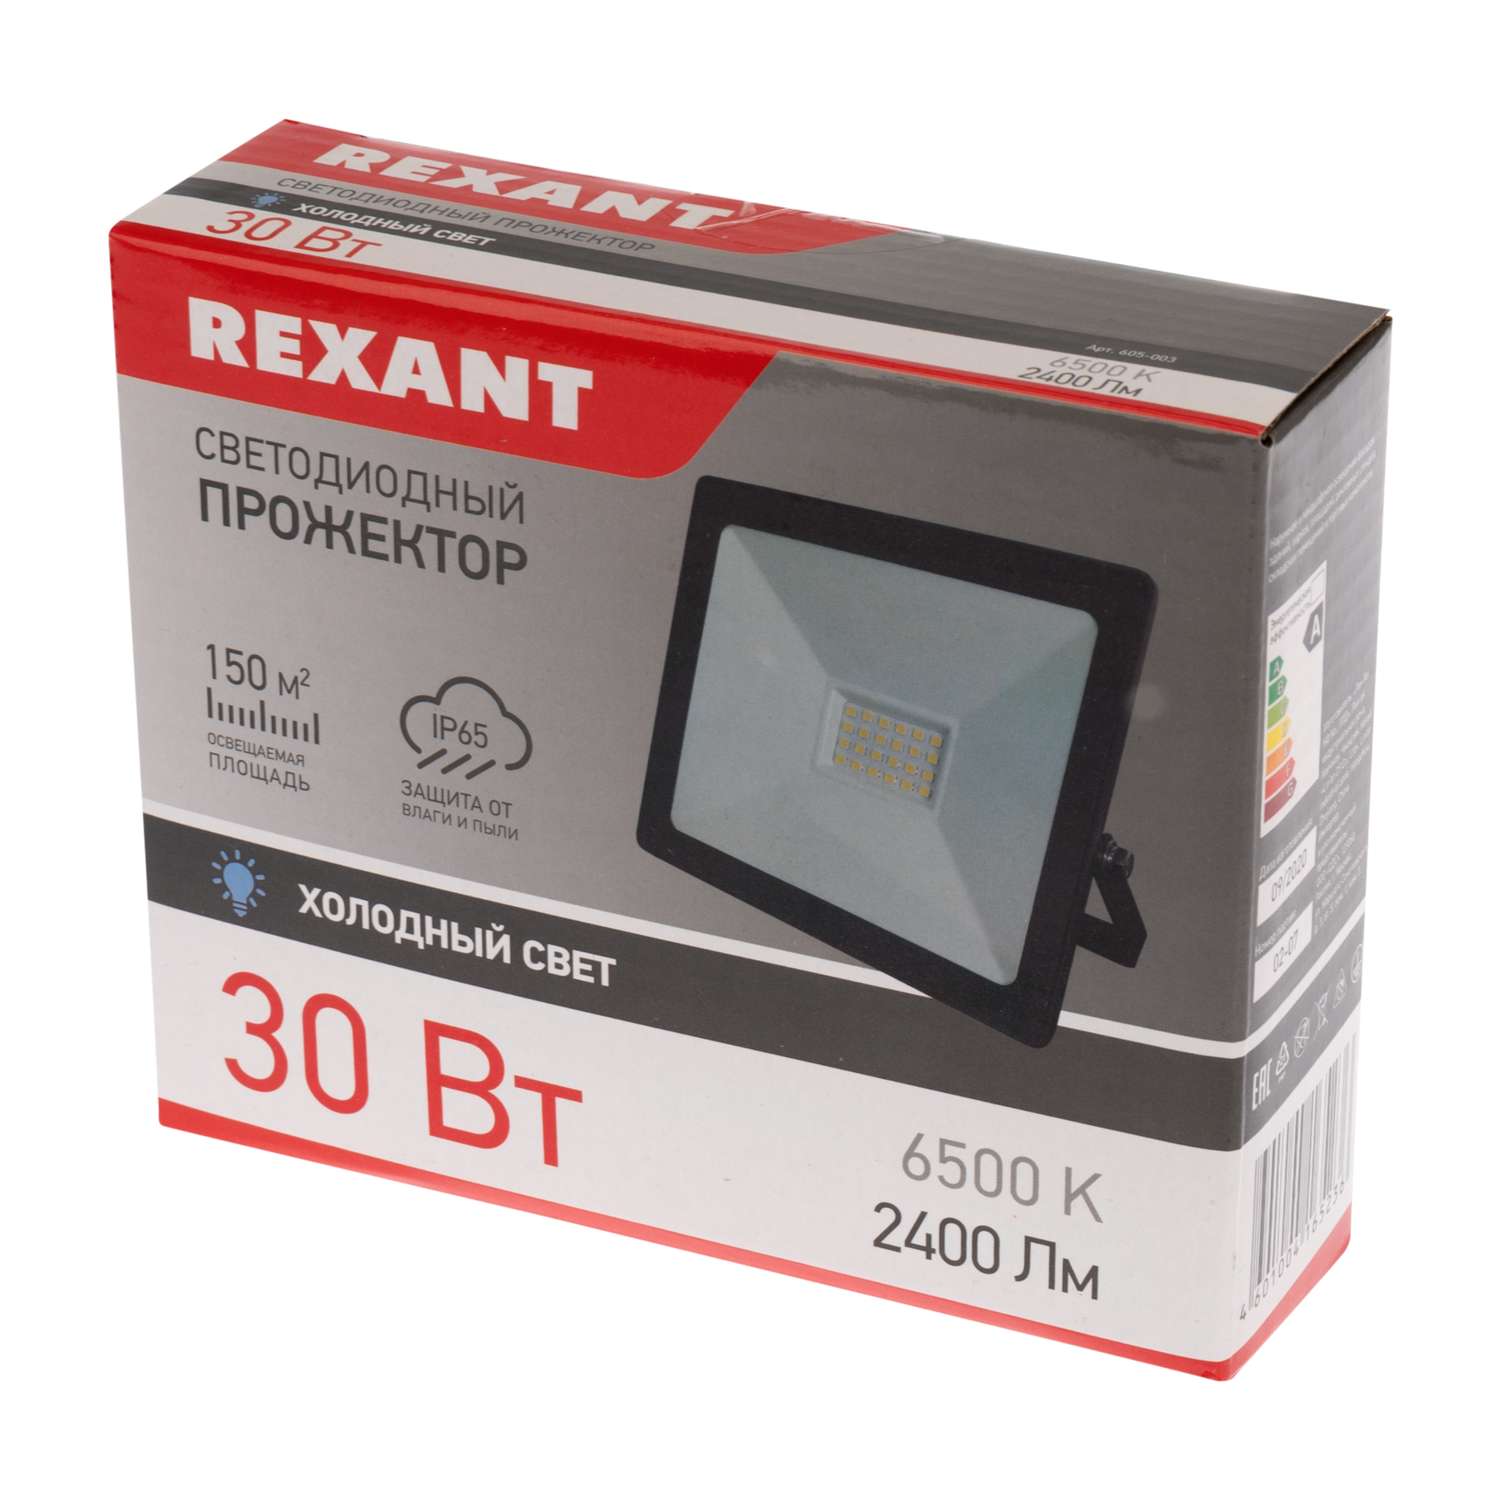 Прожектор REXANT 30 Вт светодиодный 2400Лм 6500К холодный свет черный корпус - фото 4